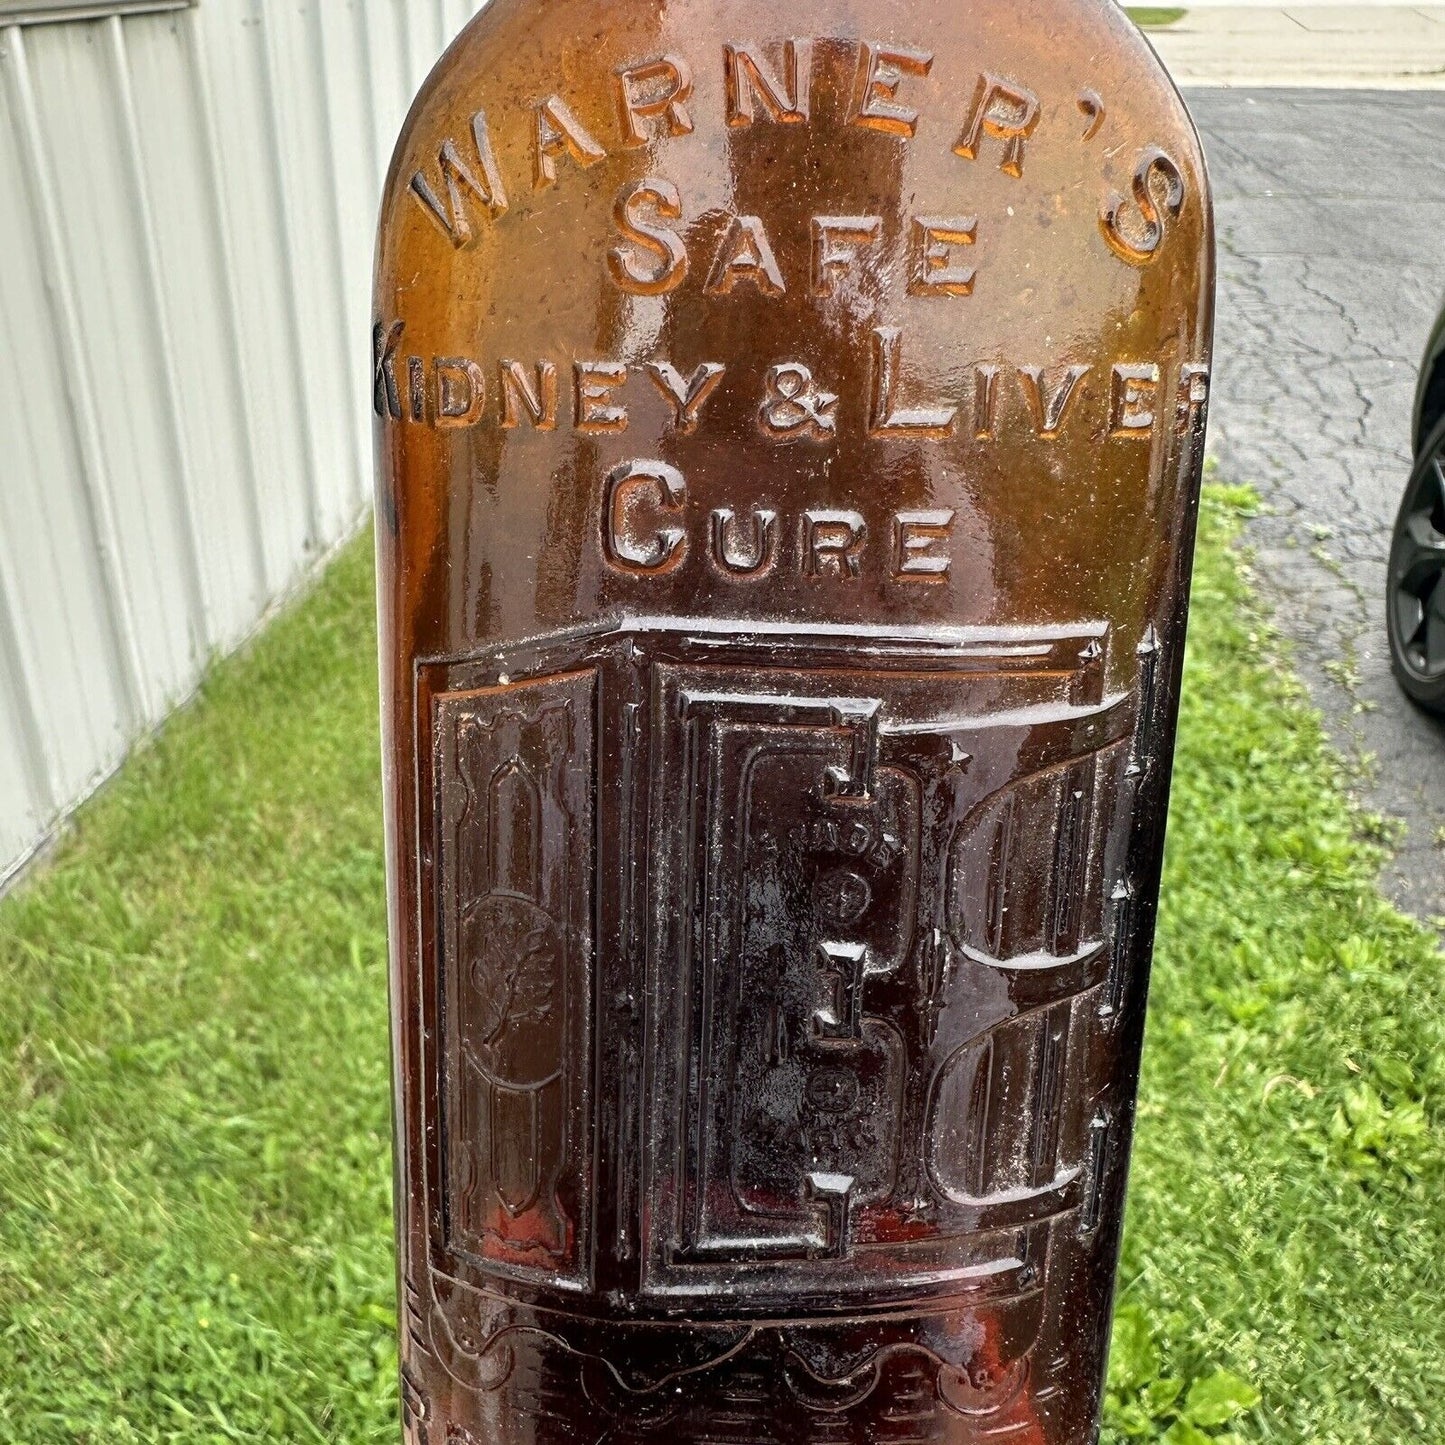 WARNER'S SAFE KIDNEY & LIVER CURE ROCHESTER,NY BLOB TOP 1890 BOLD EMB BOTTLE